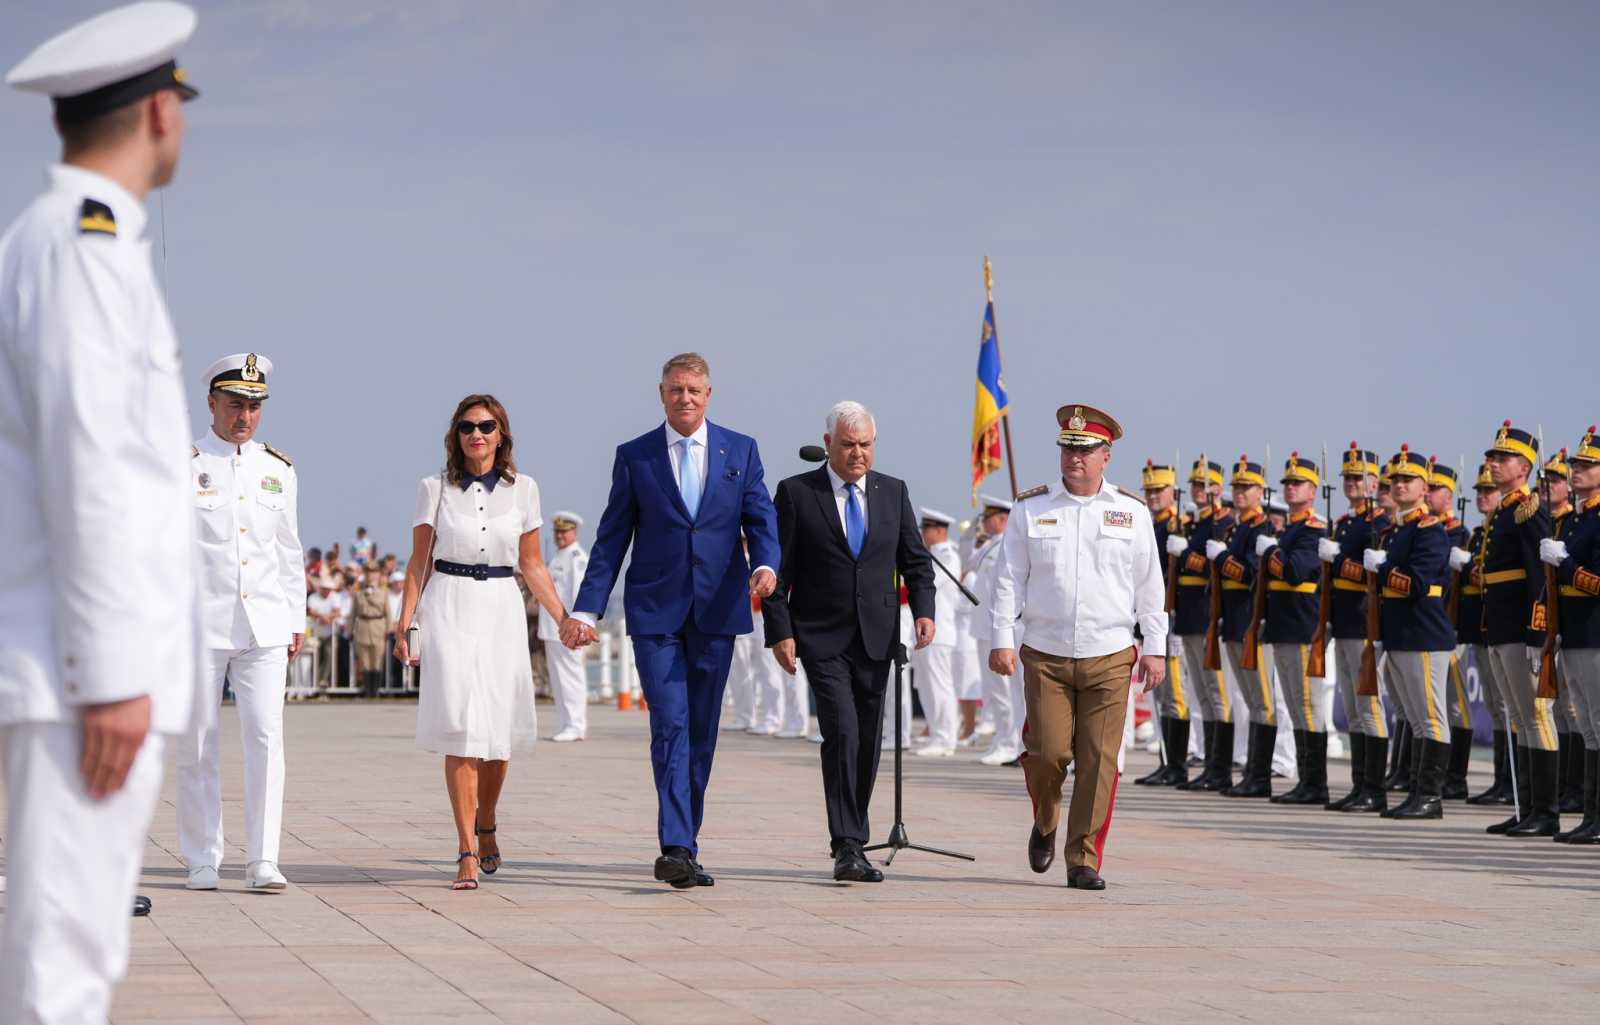 Iohannis és felesége, Carmen a haditengerészet napja alkalmából szervezett ünnepségen Fotó: Klaus Iohannis Facebook oldala  